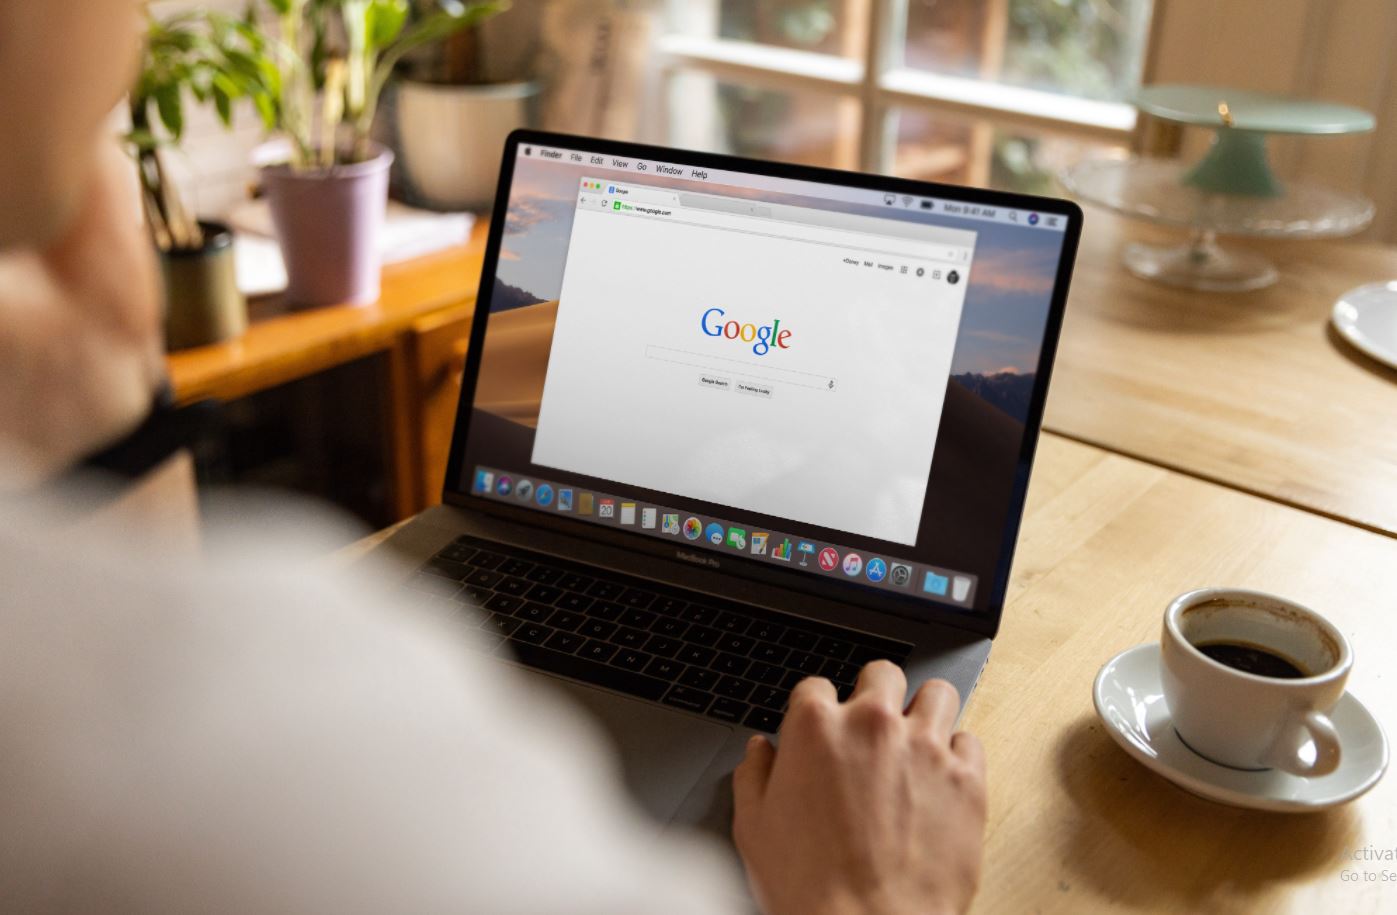 جوجل تعيد ميزة المؤقت لمحرك البحث الخاص بها